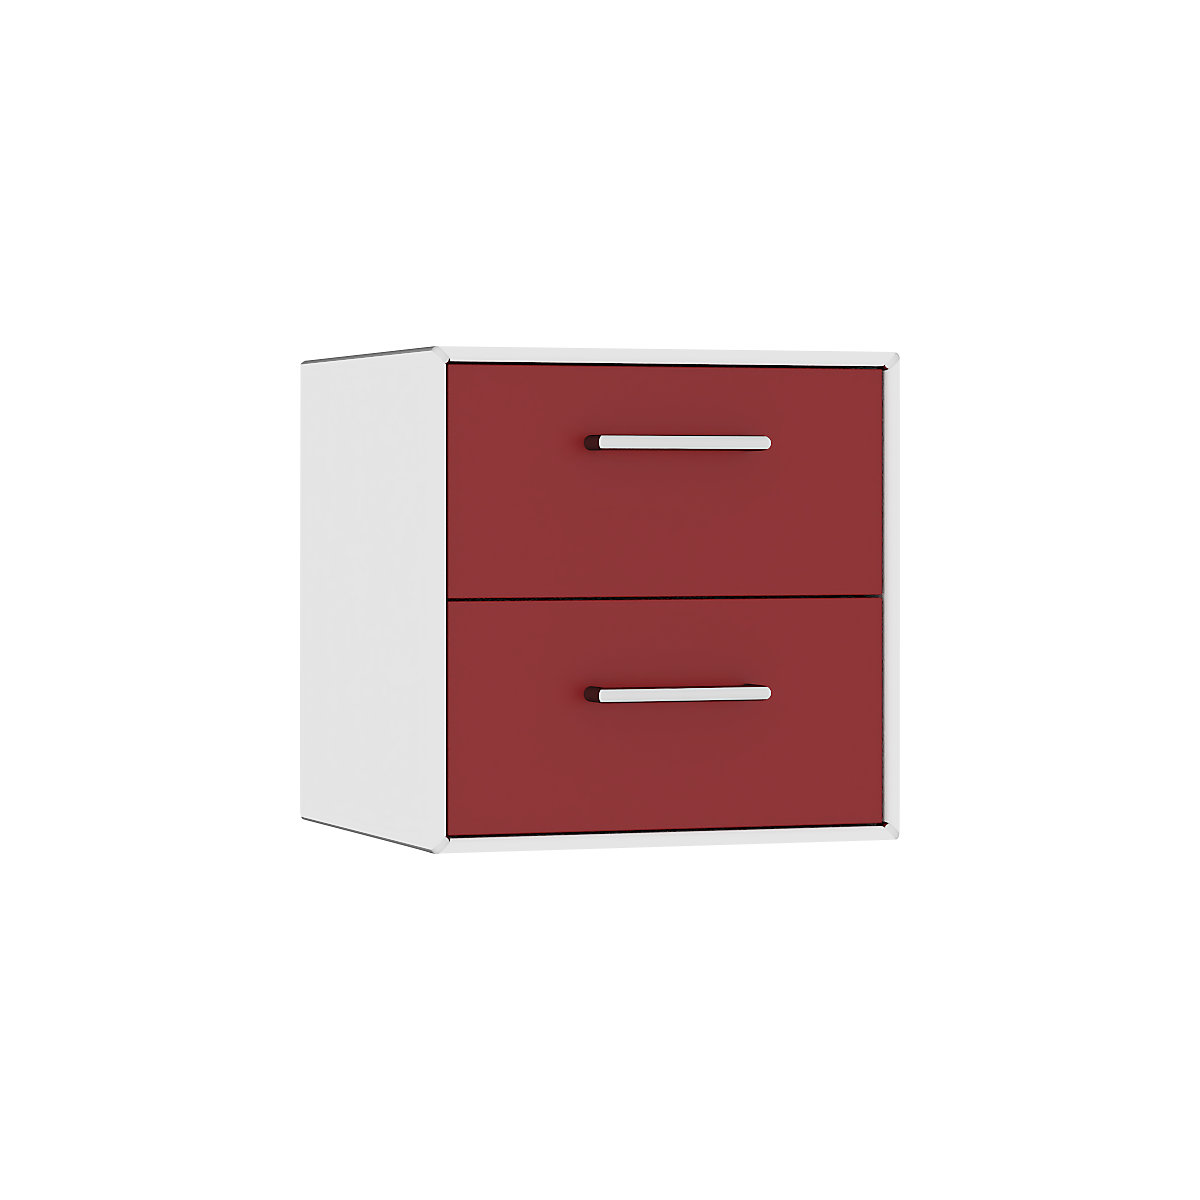 mauser – Cuie individuală, suspendată, 2 sertare, lățime 385 mm, alb pur / roșu rubin